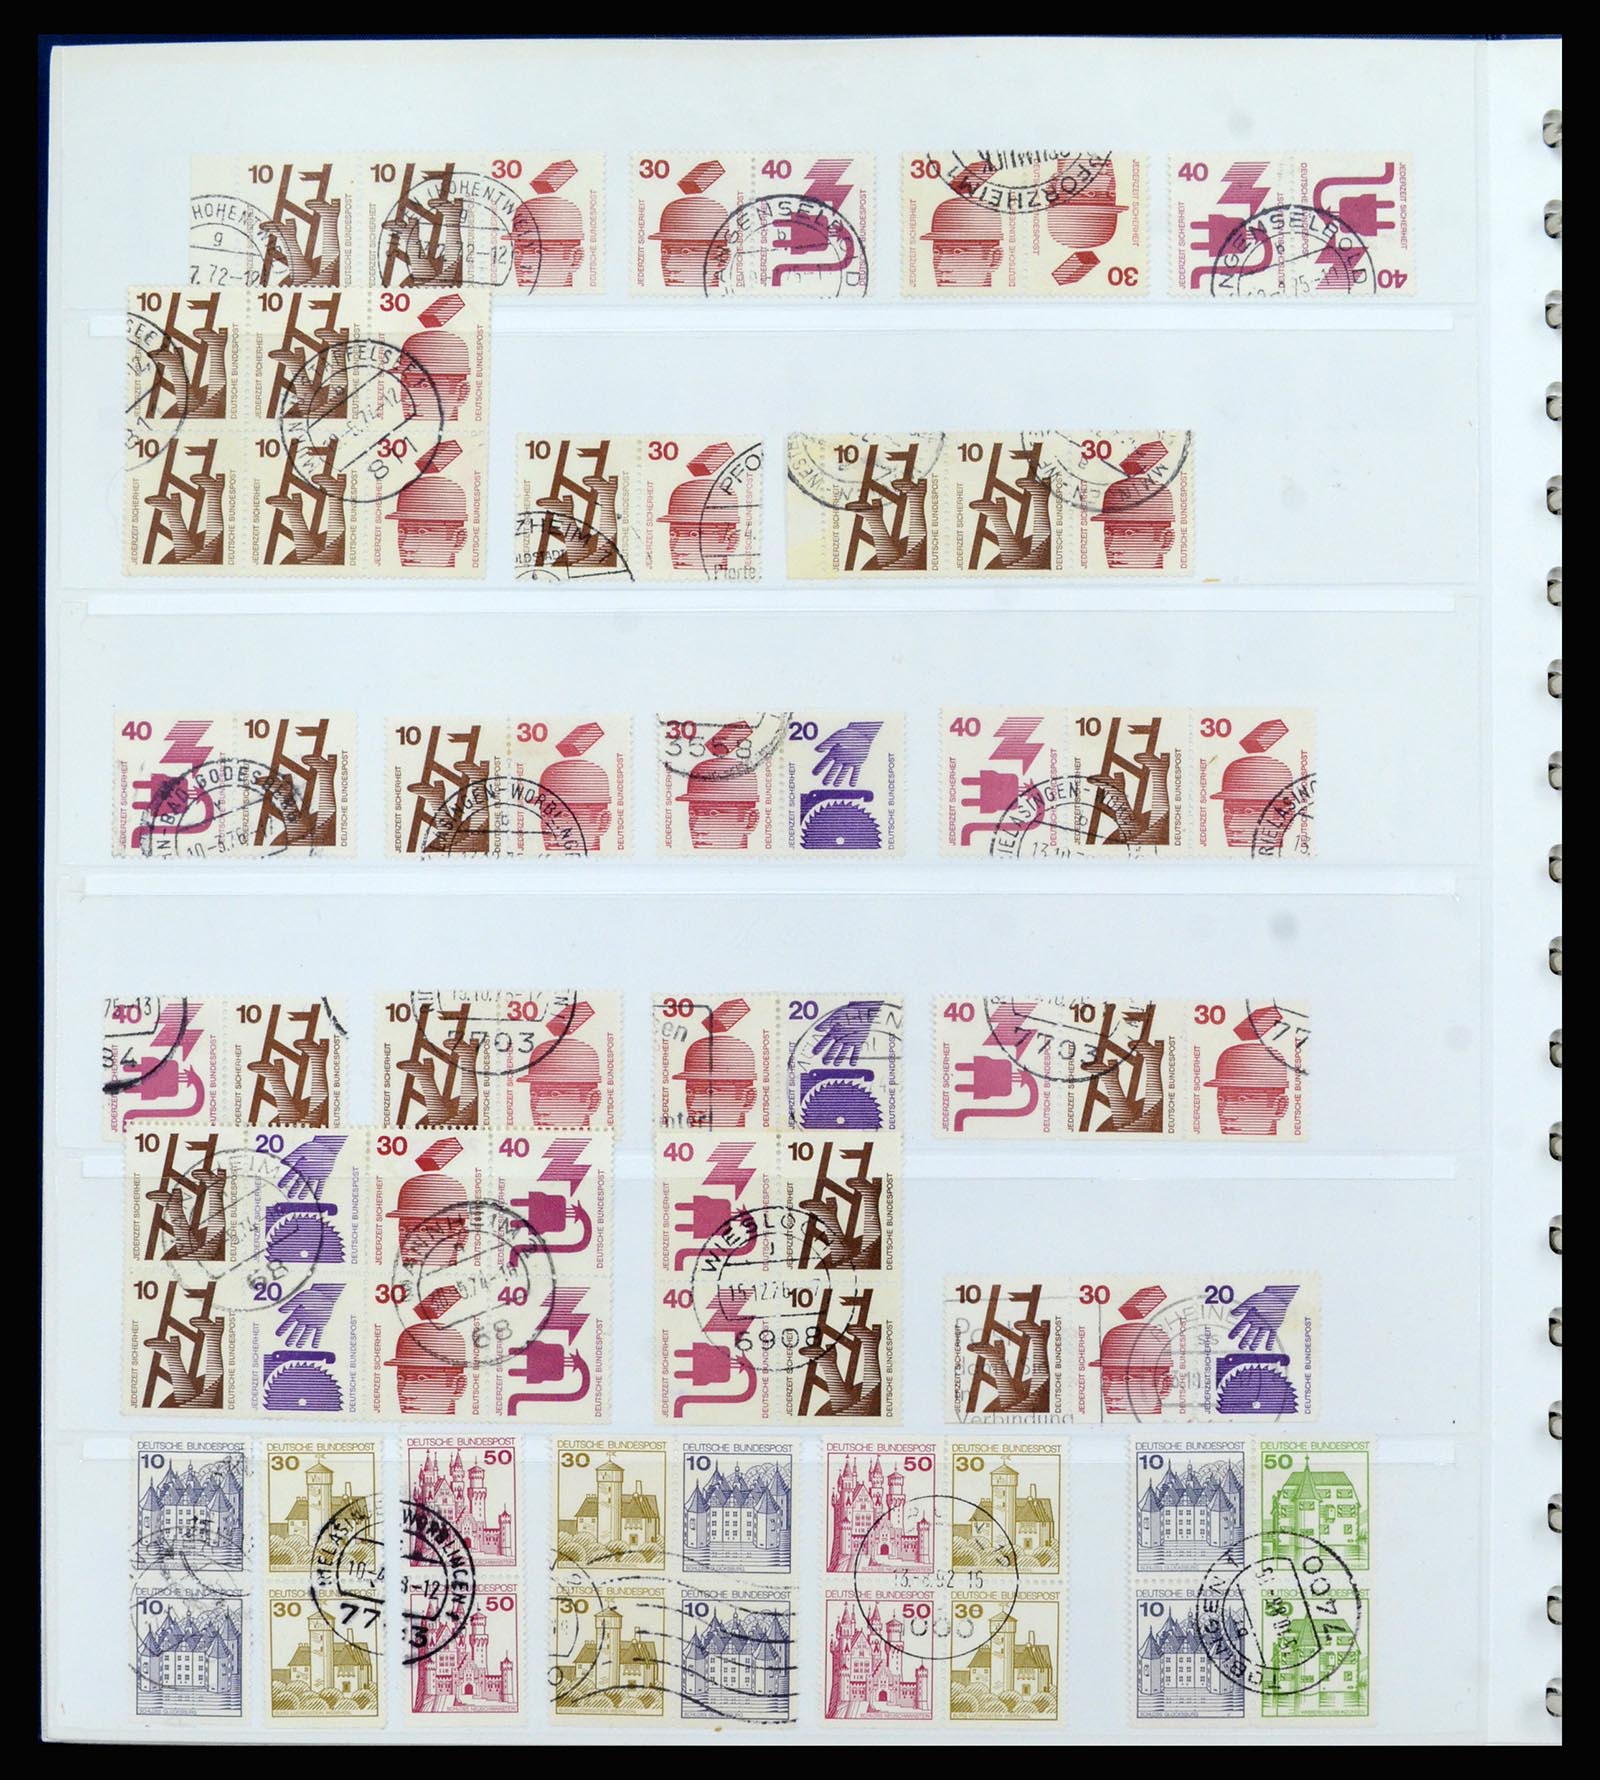 37190 030 - Postzegelverzameling 37190 Duitsland combinaties 1912-1991.